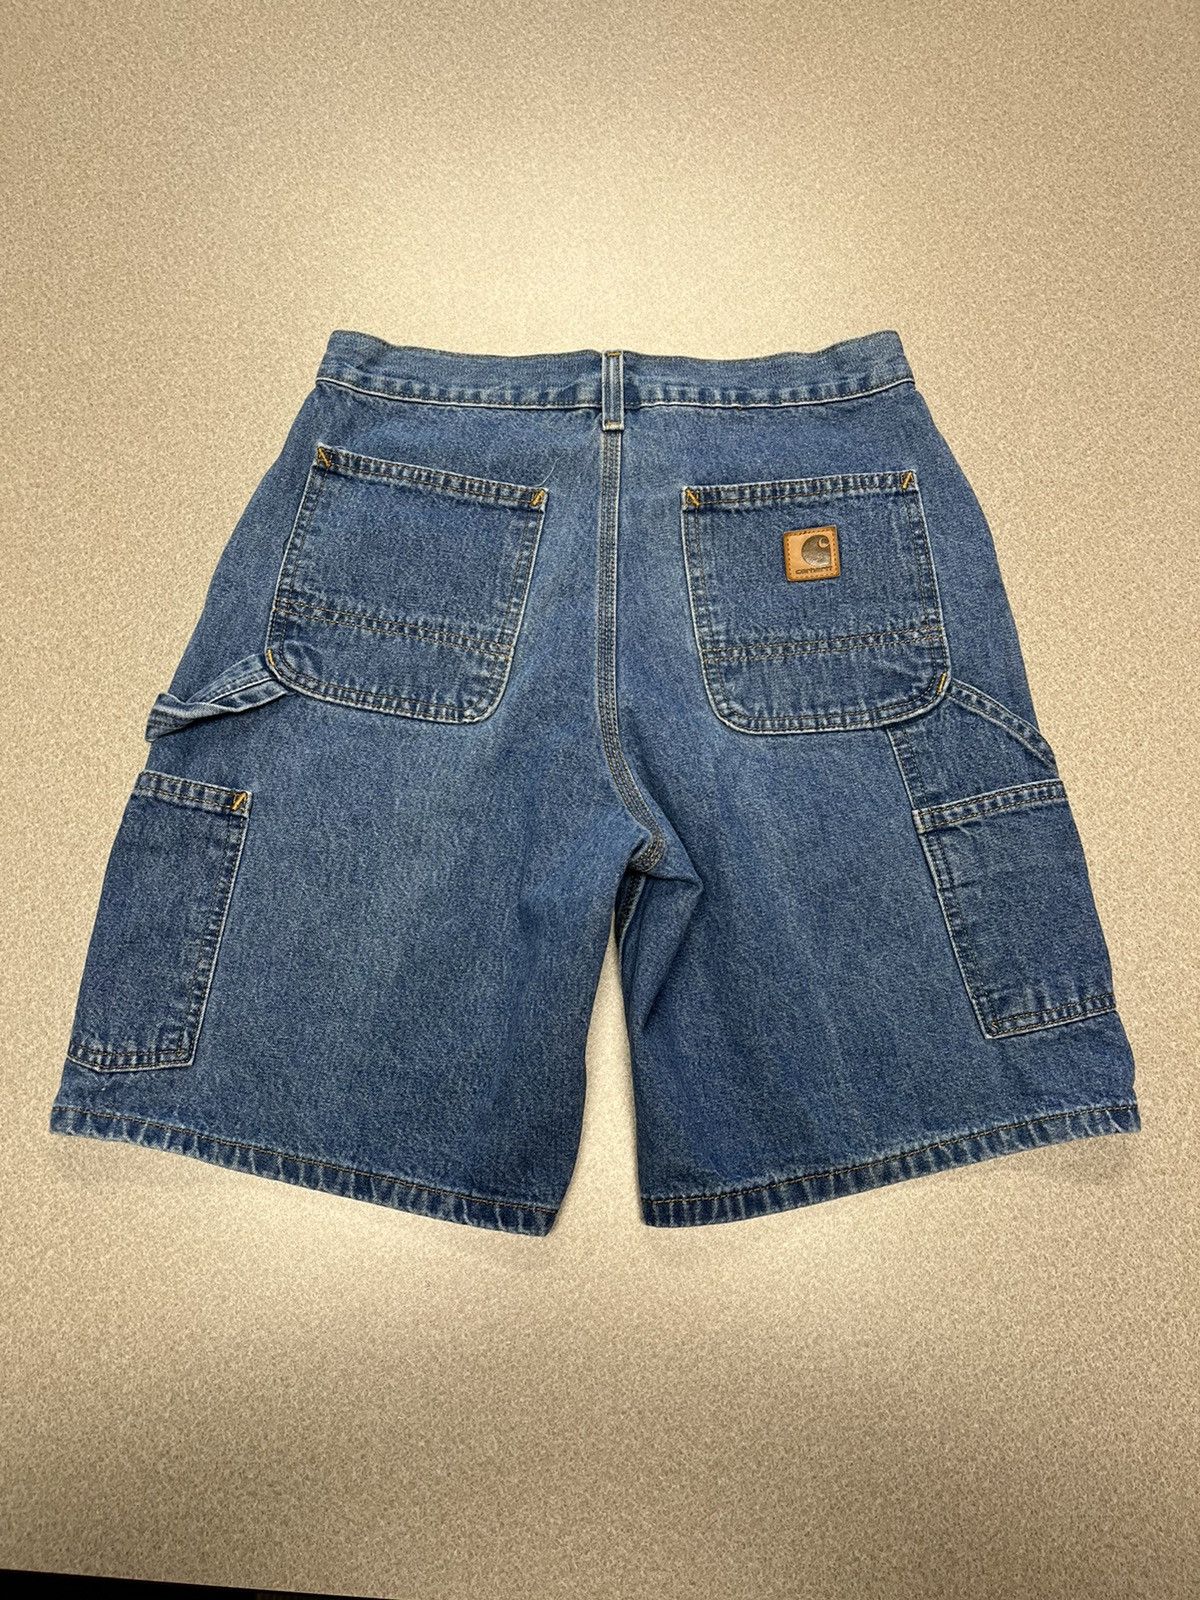 Vintage Vintage Carhartt Denim Shorts (Jorts) - Size 30 Size US 30 / EU 46 - 3 Thumbnail